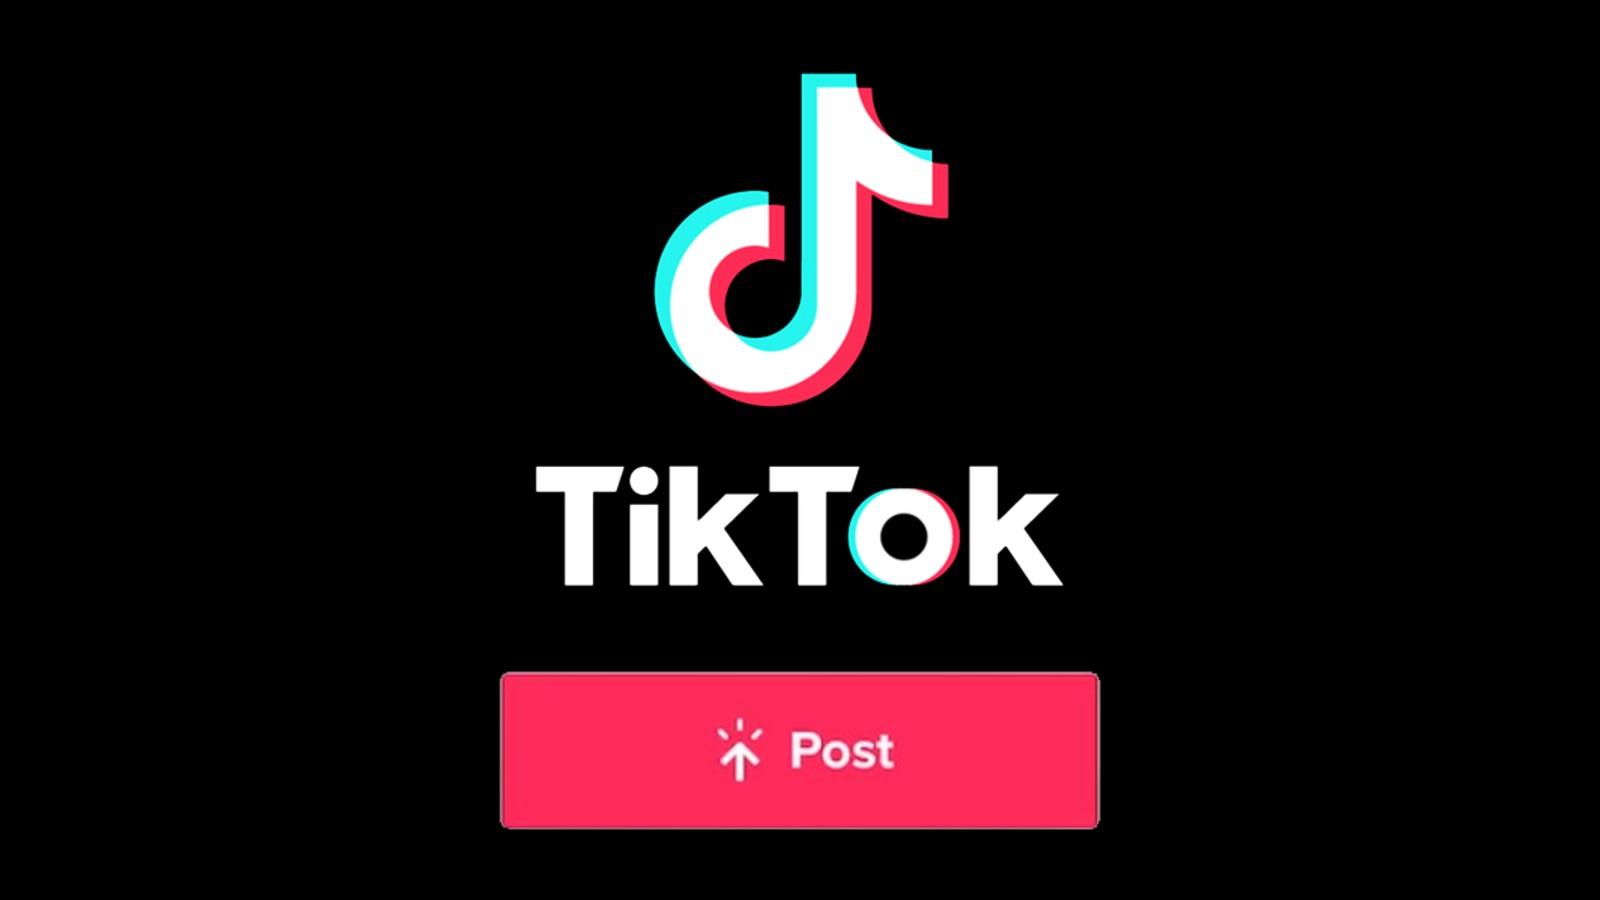 TikTok logo next to the post button